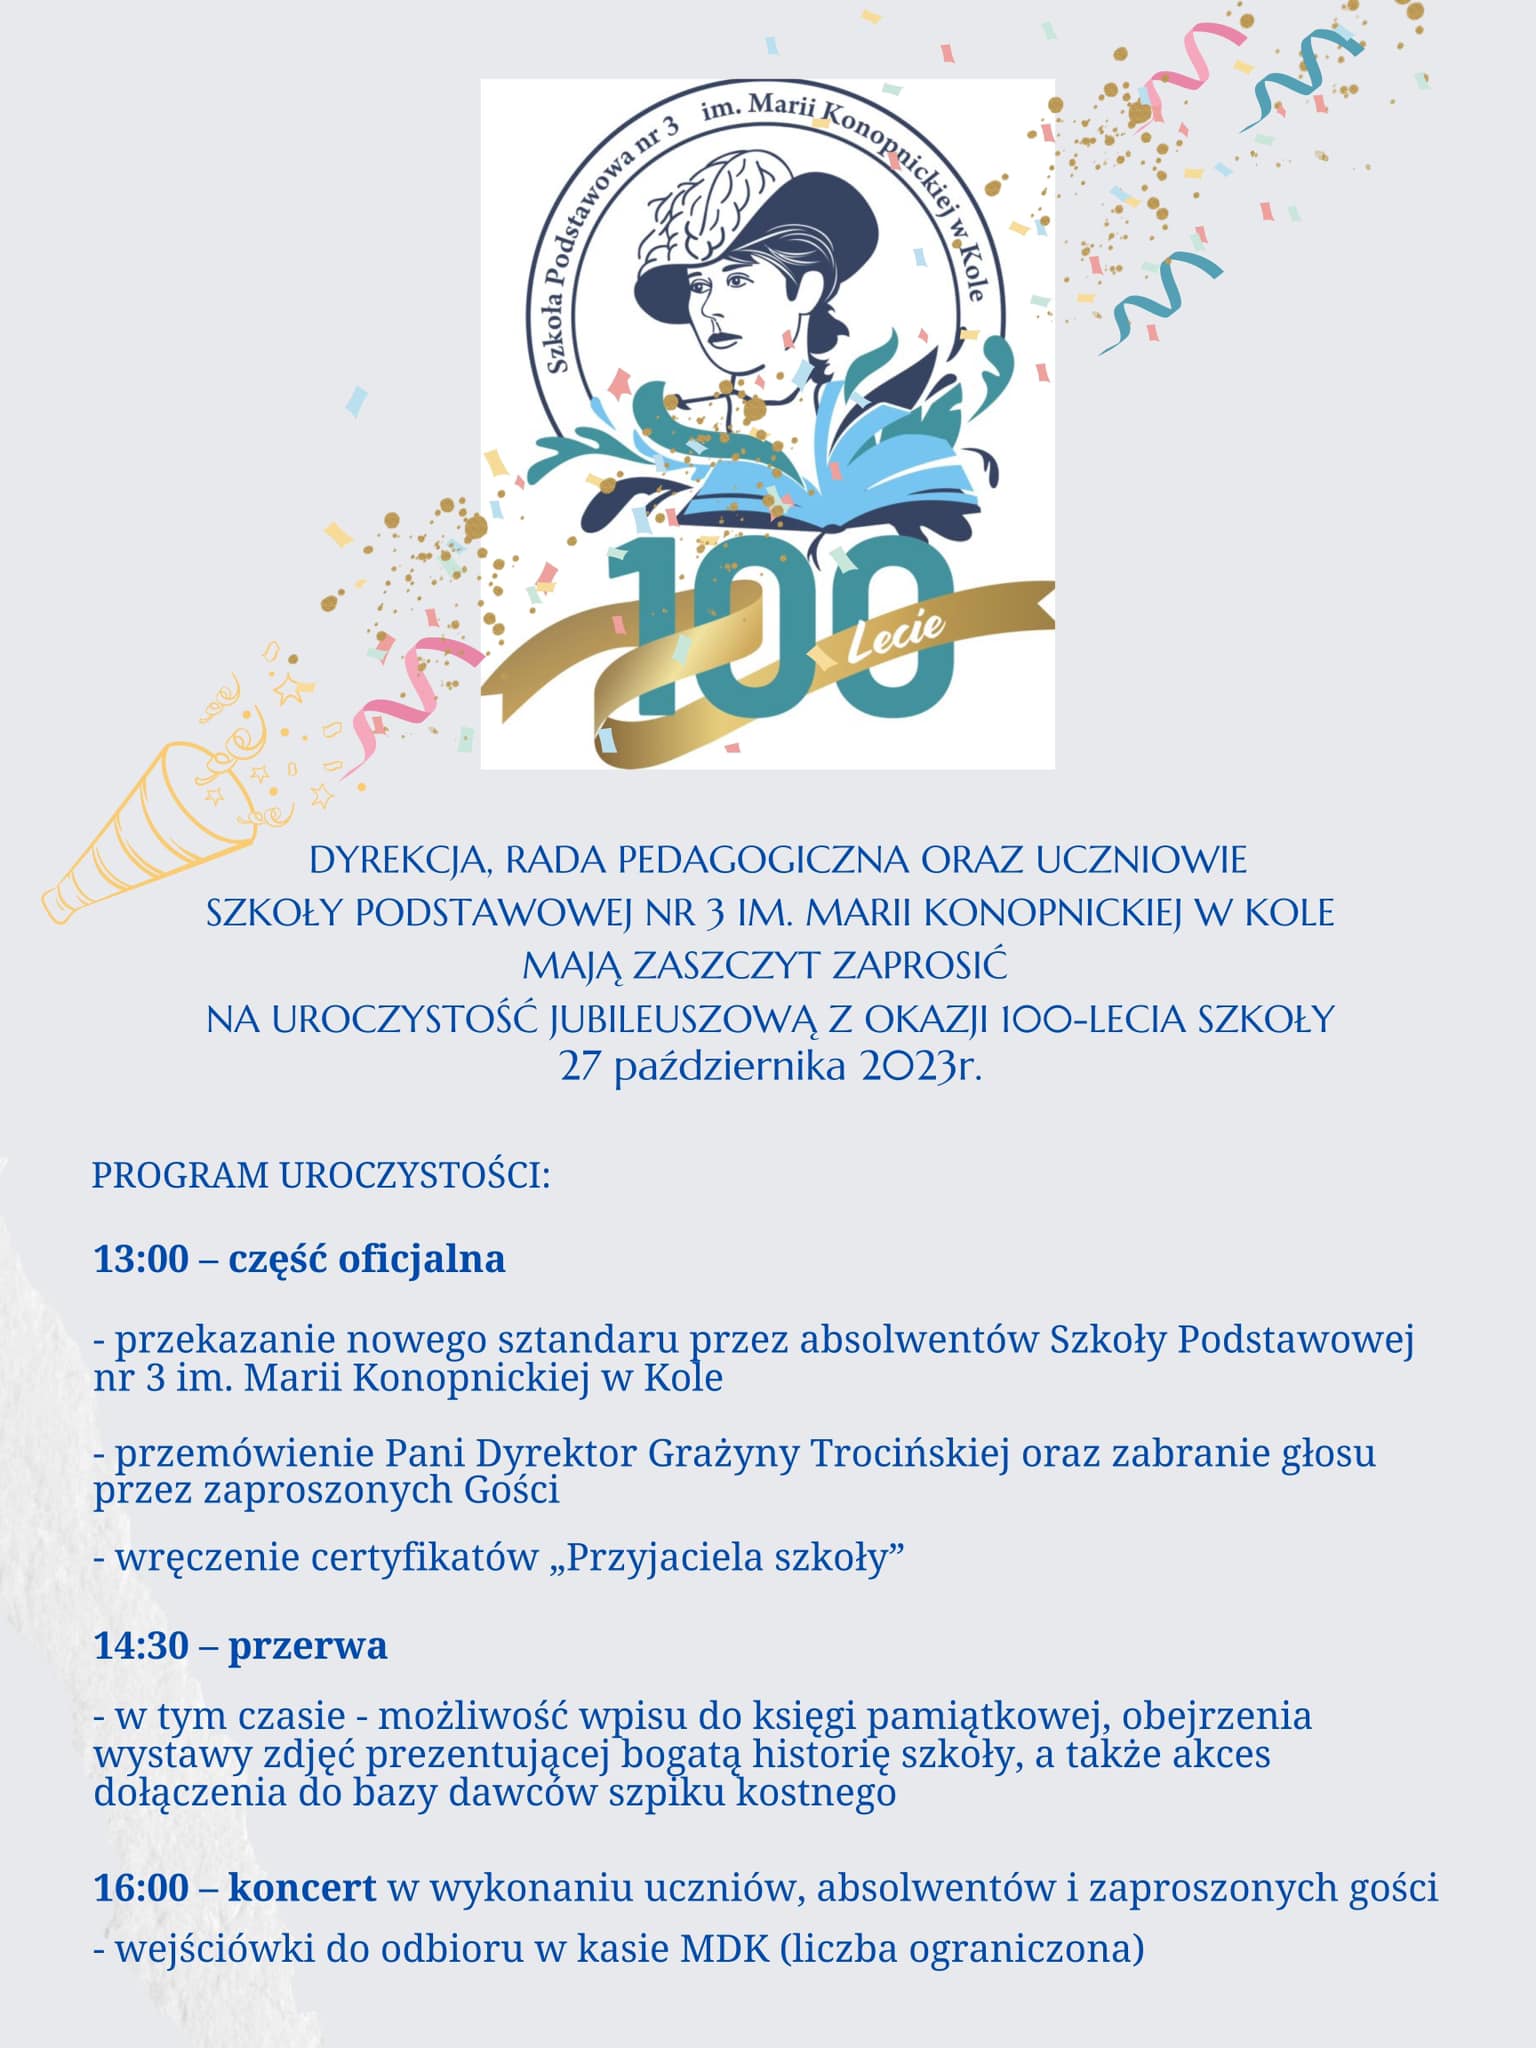 Plakat z programem uroczystości Szkoły Podstawowej Nr 3 im. Marii Konopnickiej w Kole, tekst poniżej